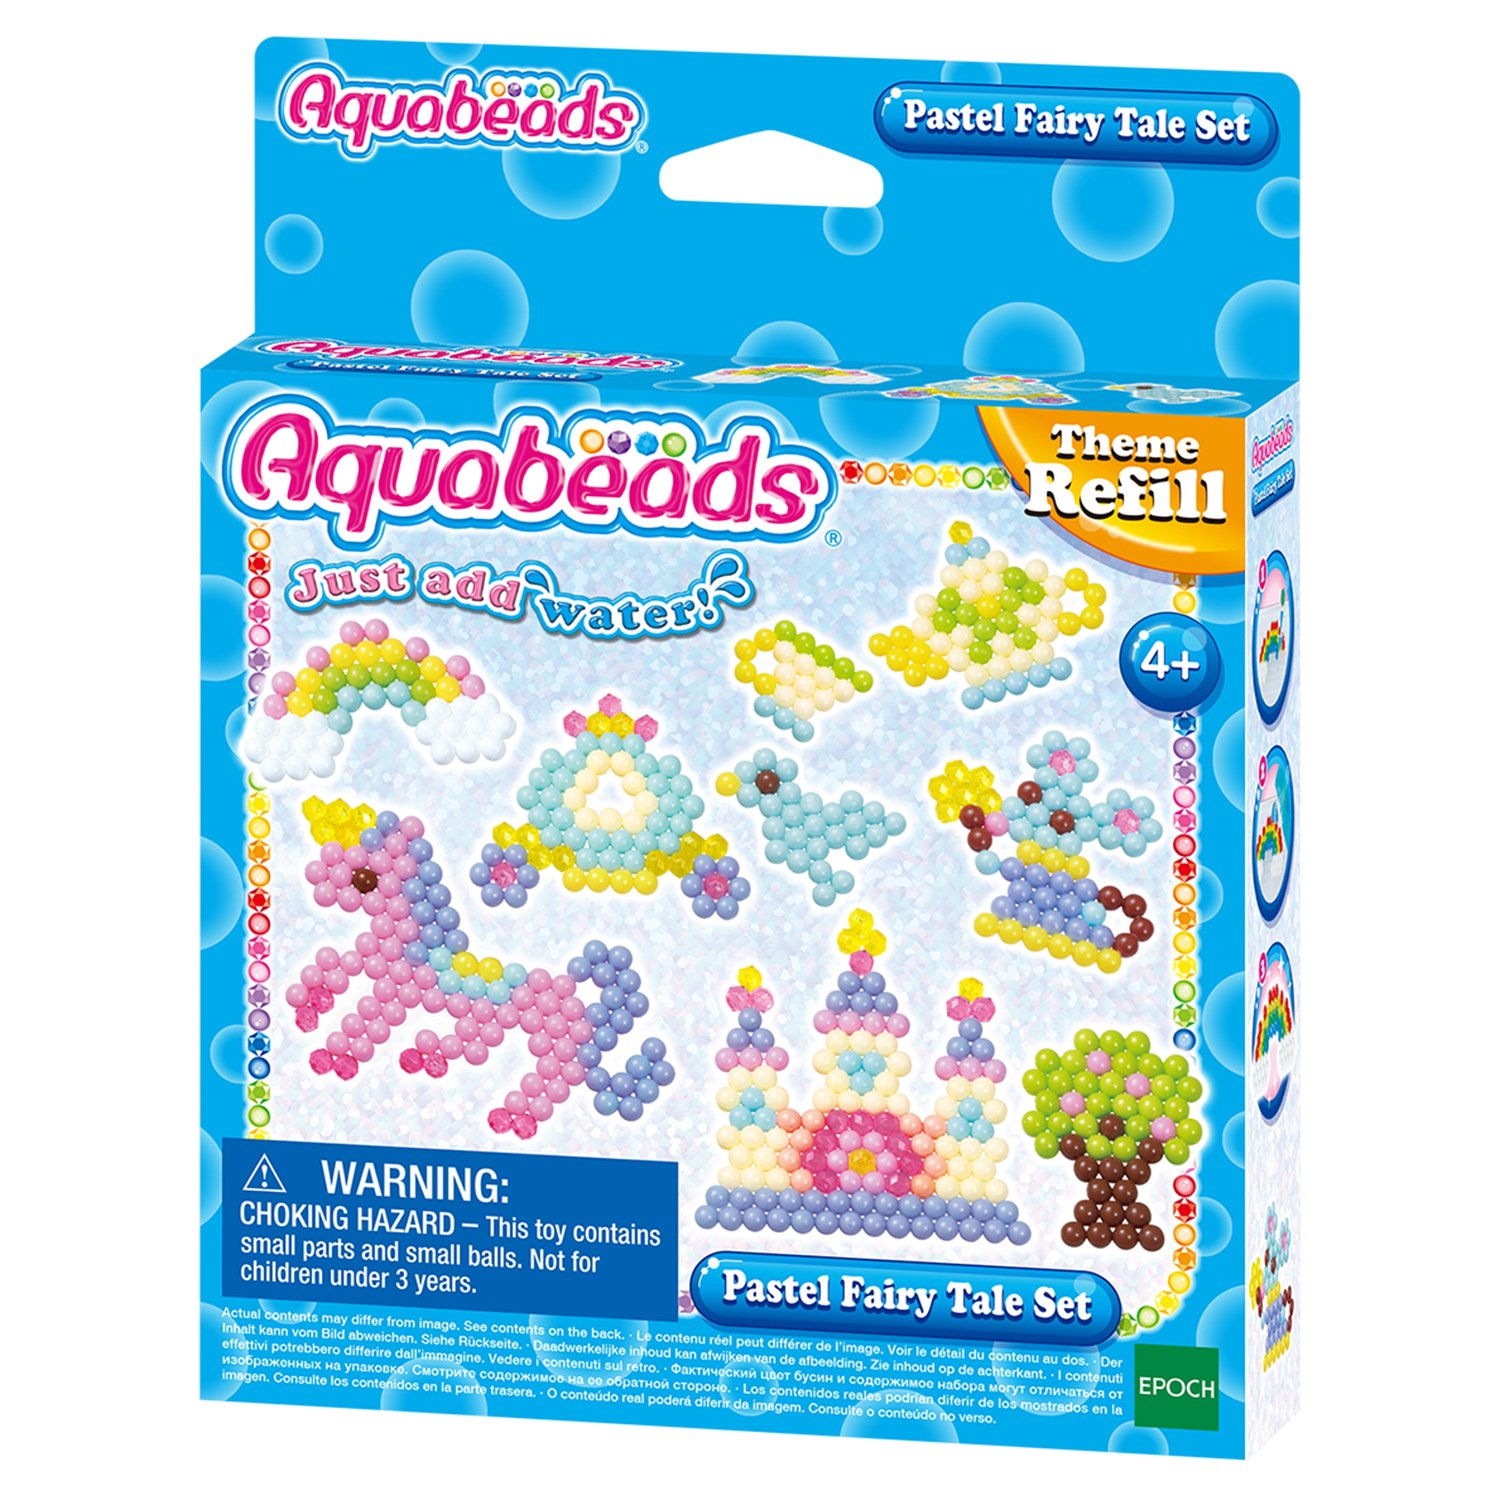 Набор Aquabeads Сказочные игрушки 31632